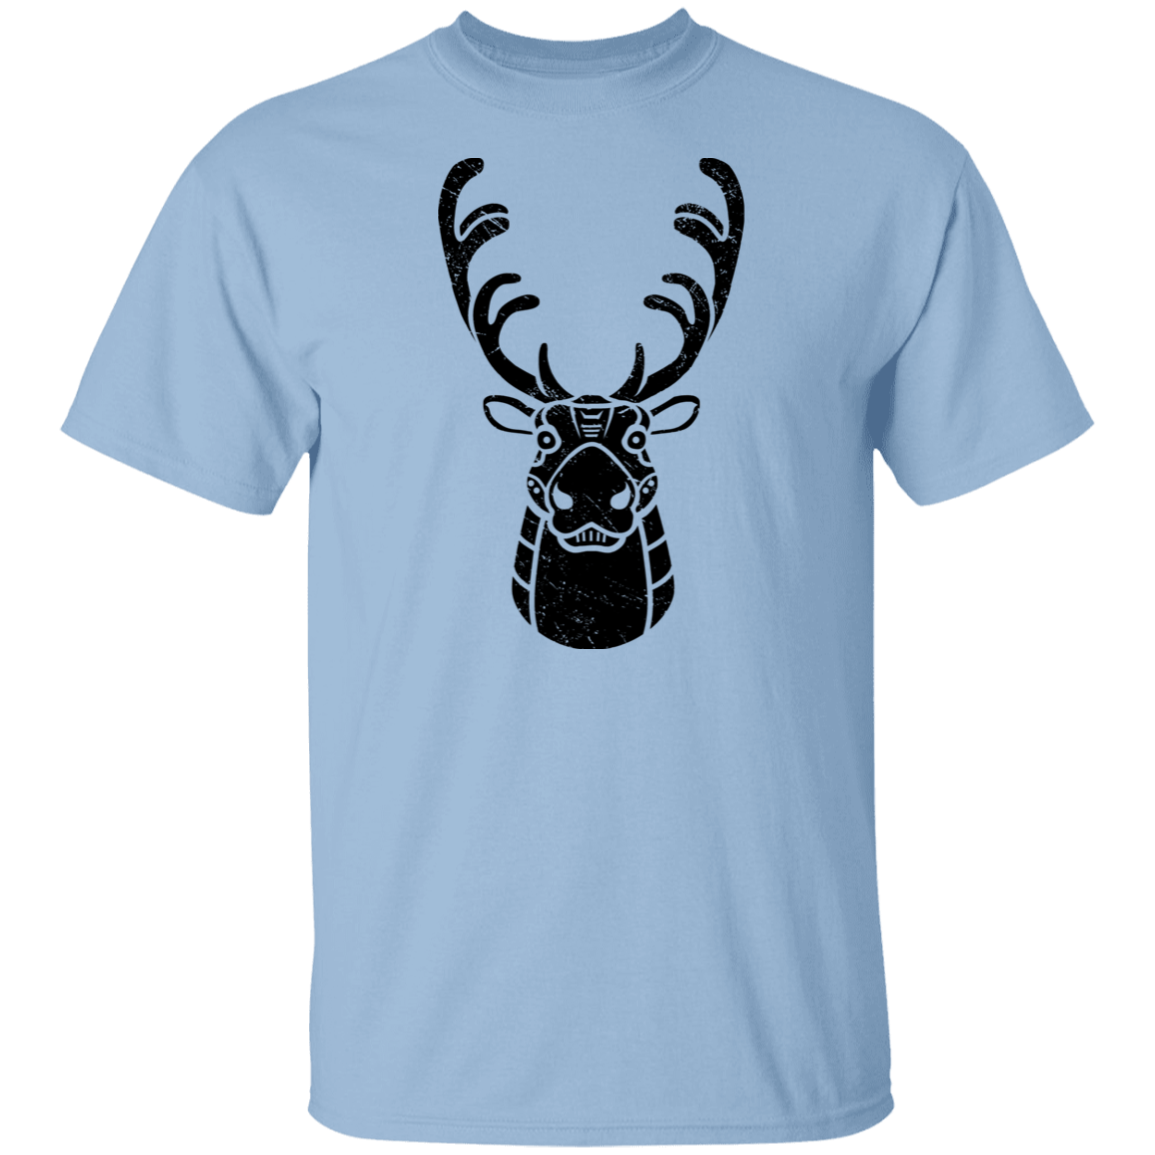 Black Distressed Emblem T-Shirt for Kids (Caribou/Spirit)